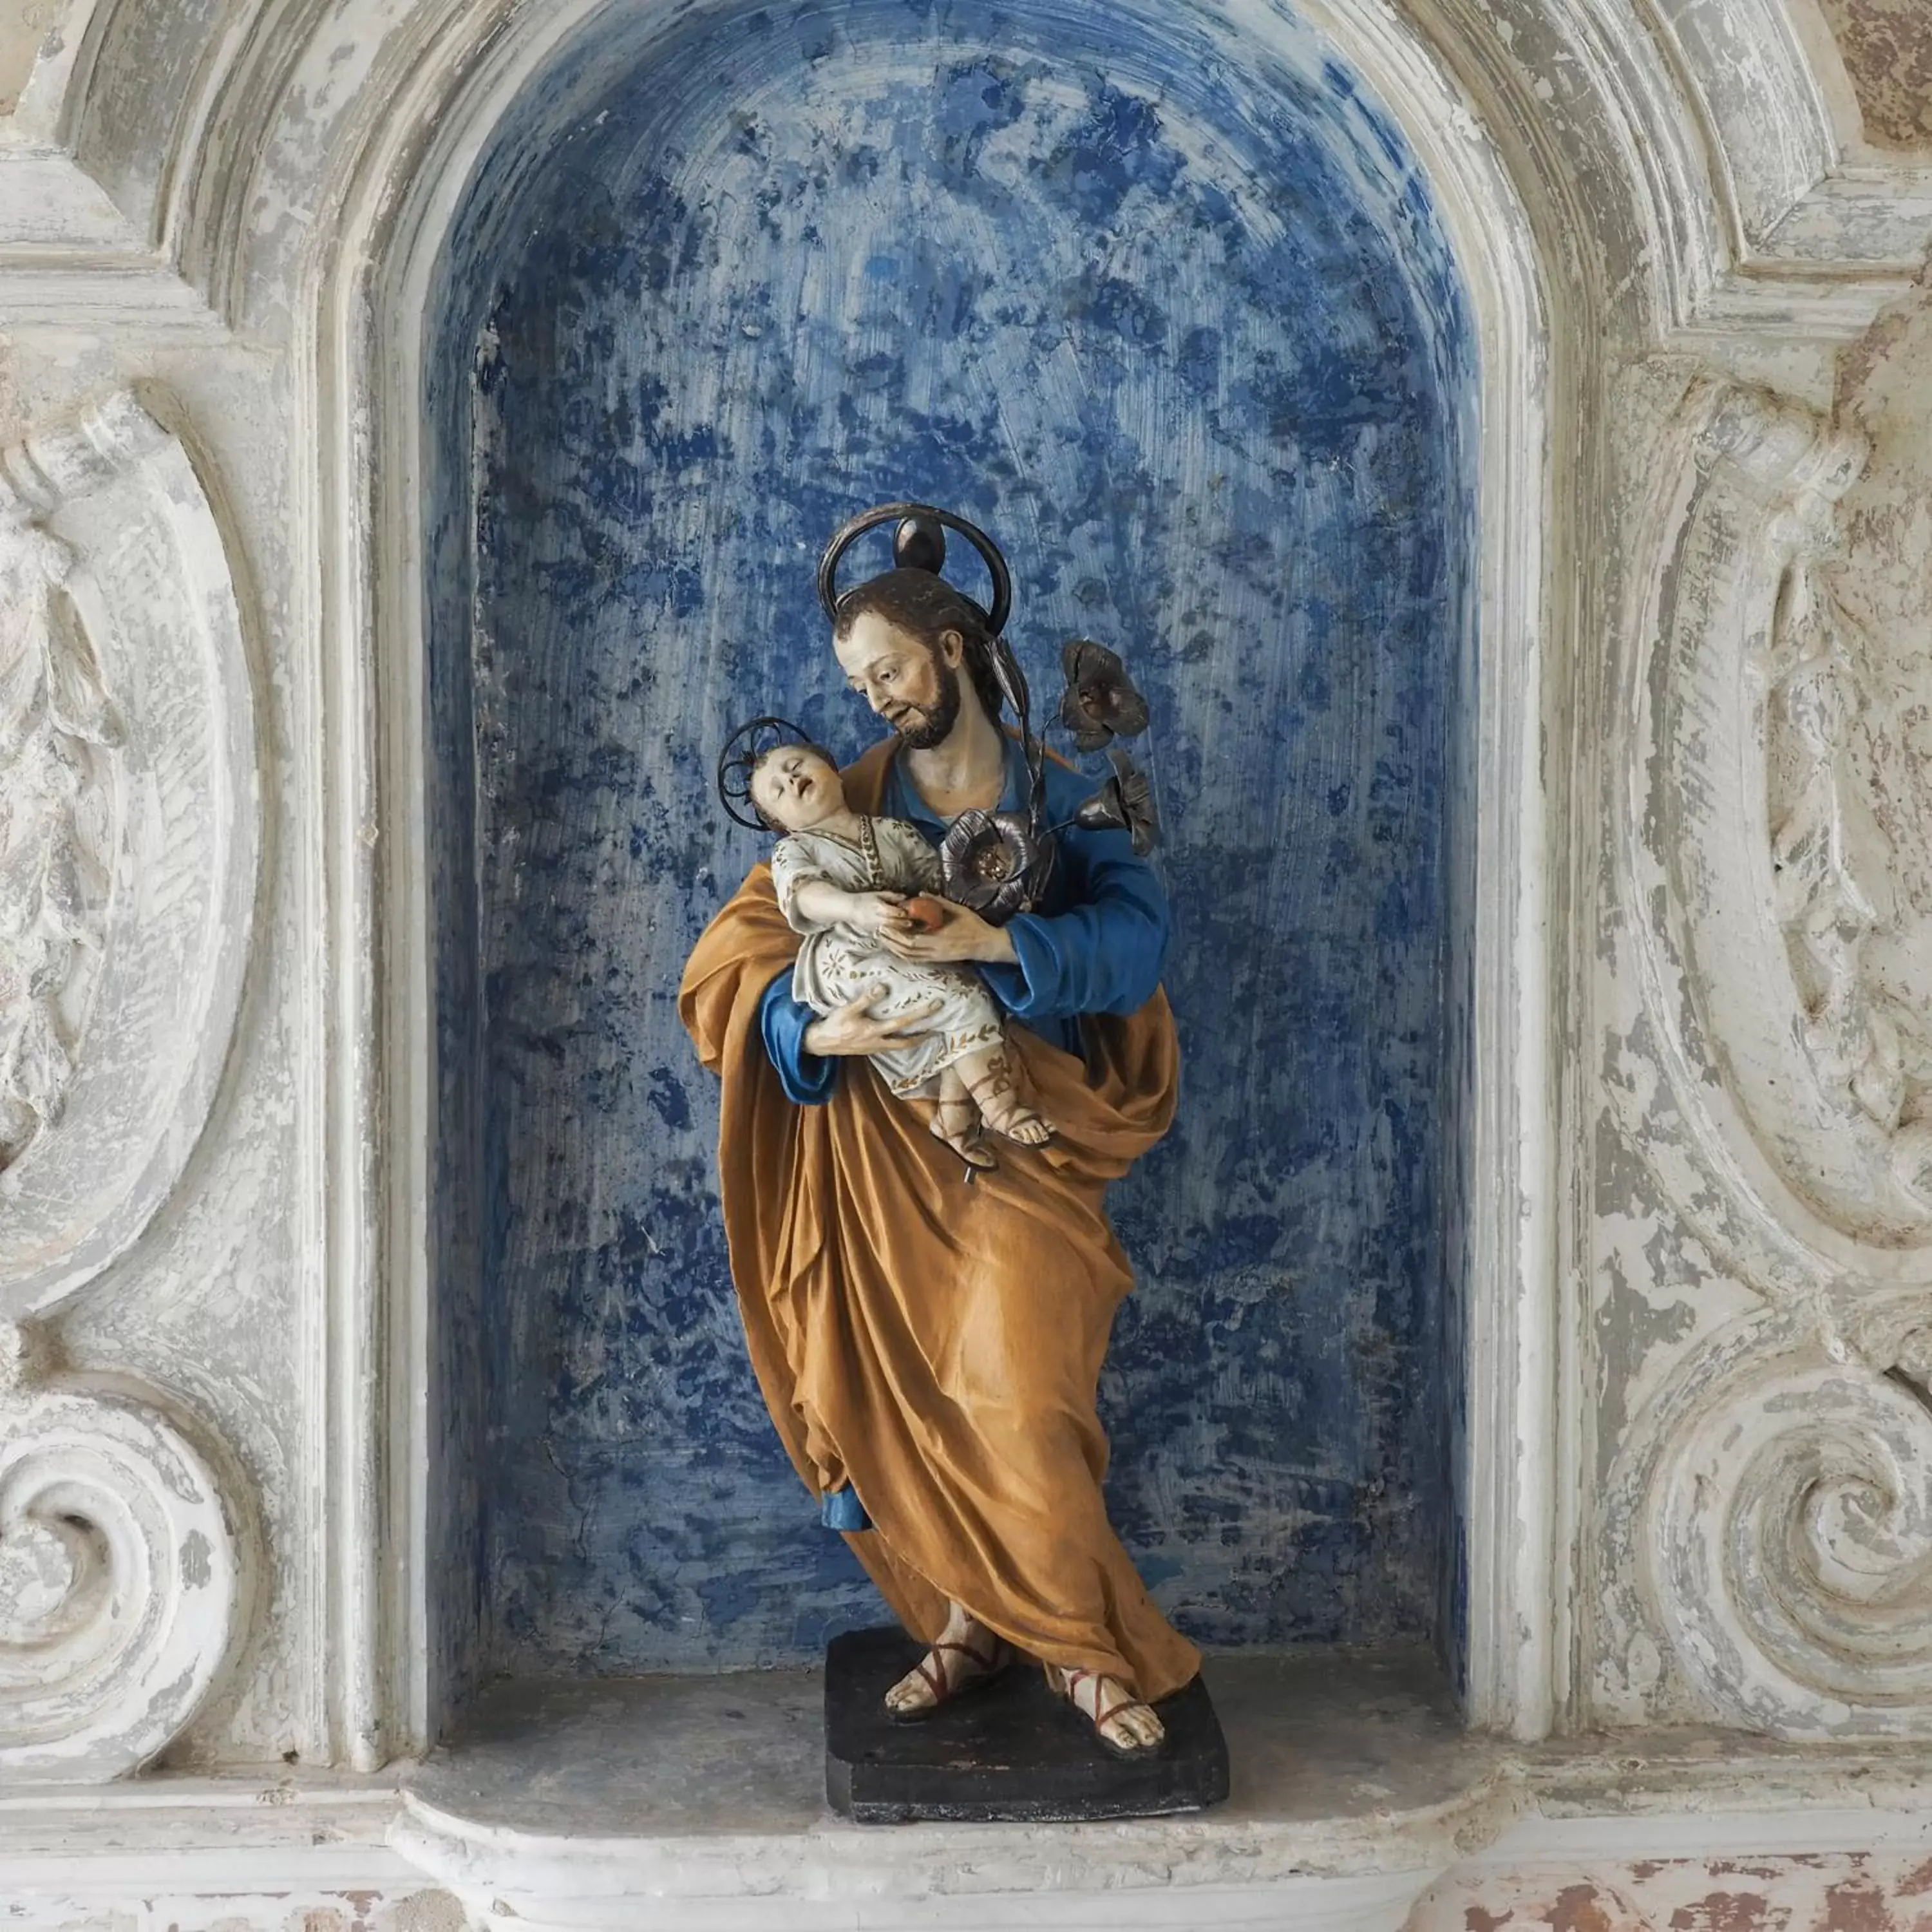 Decorative detail in Horto Convento